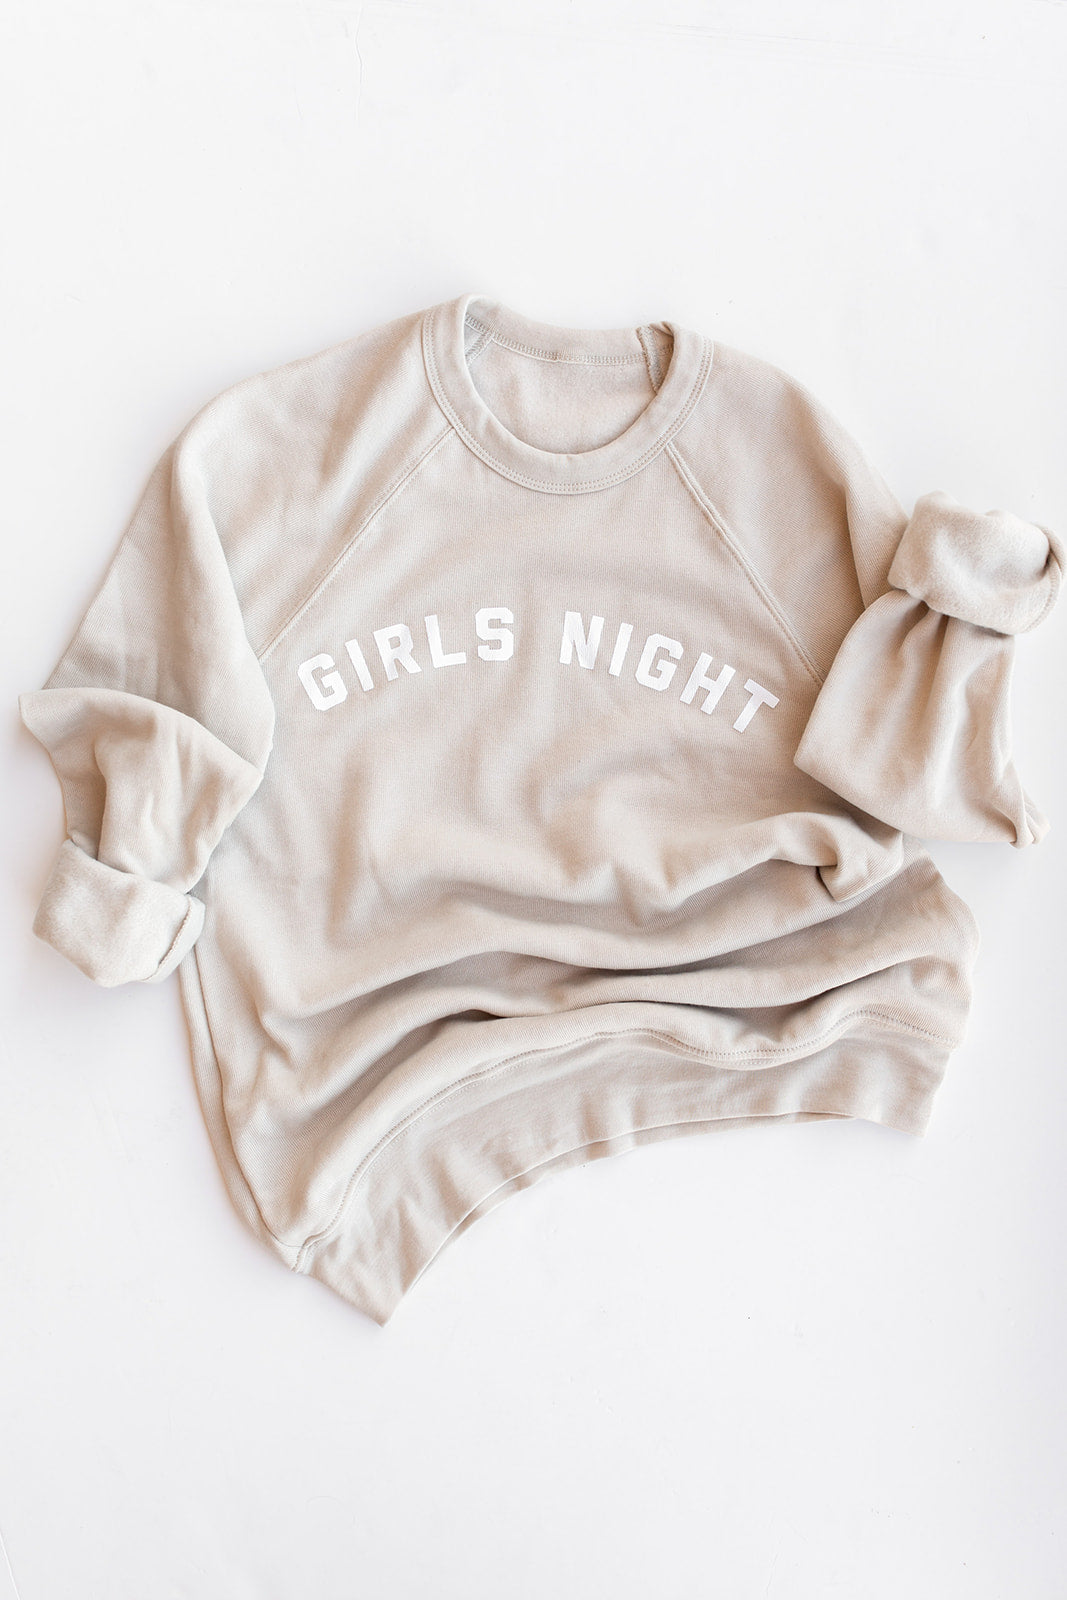 Classic Girls Night Sweatshirt for women